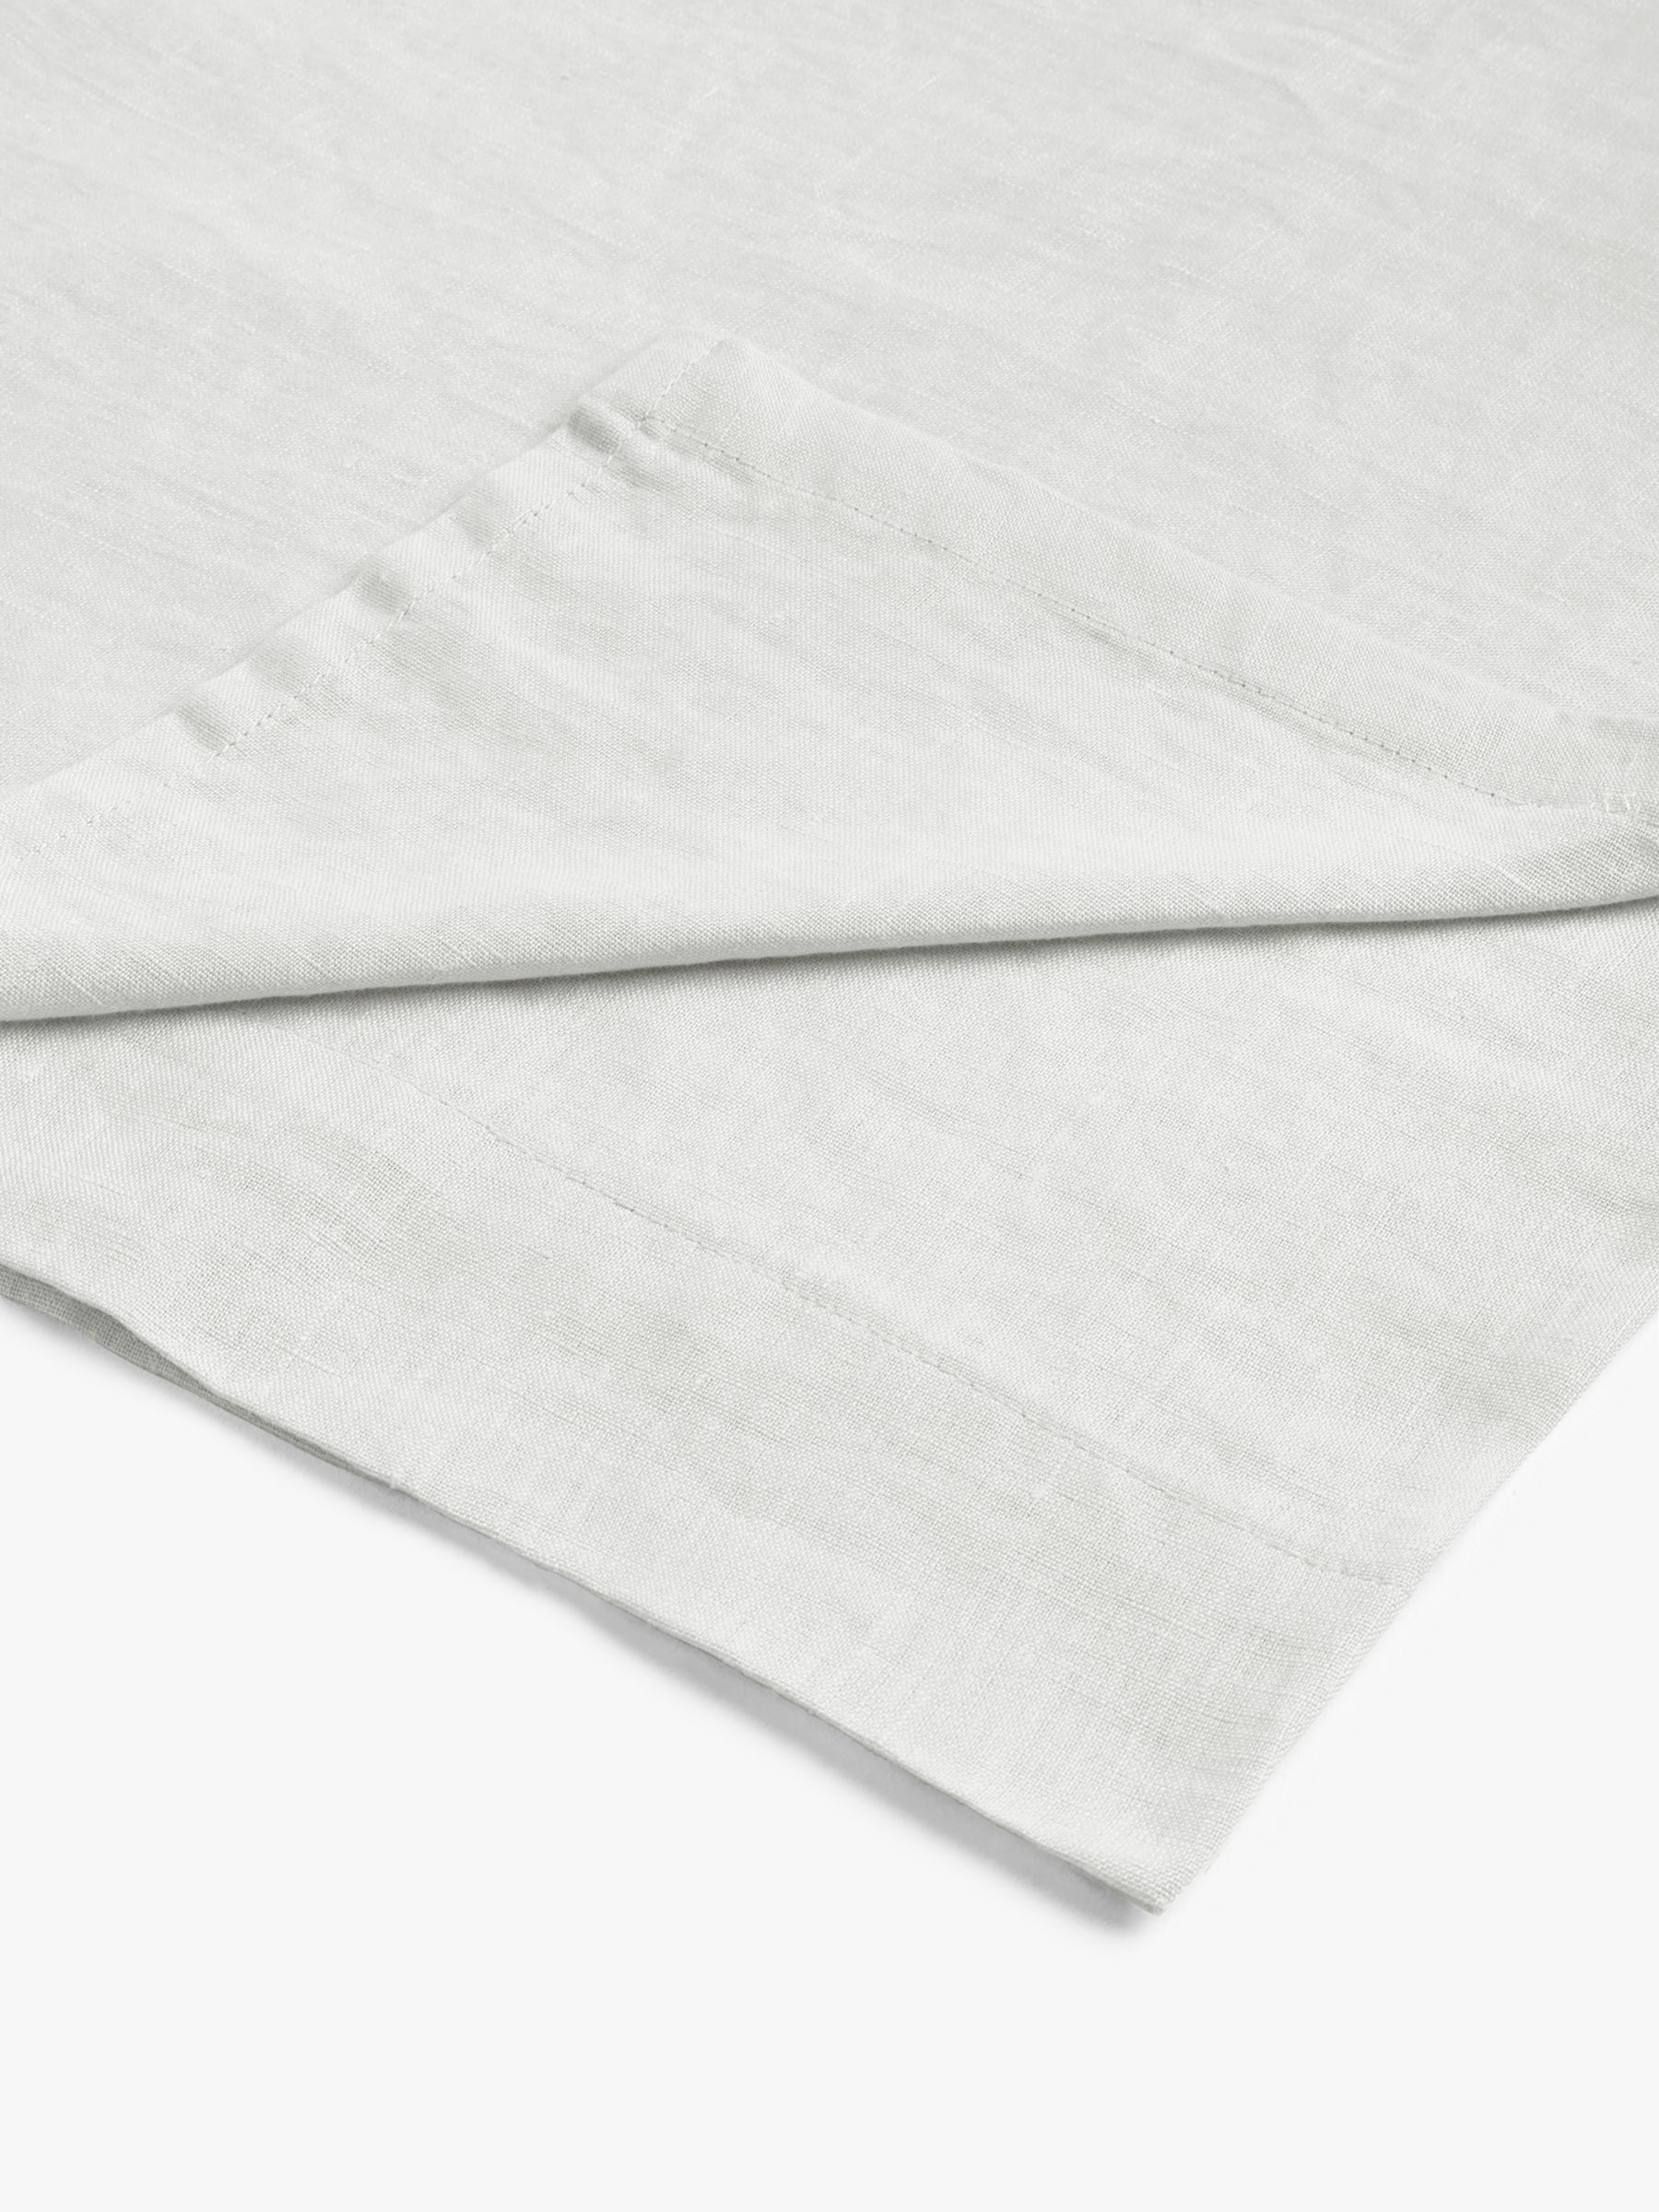 John Lewis & Partners 100% Linen Flat Sheet